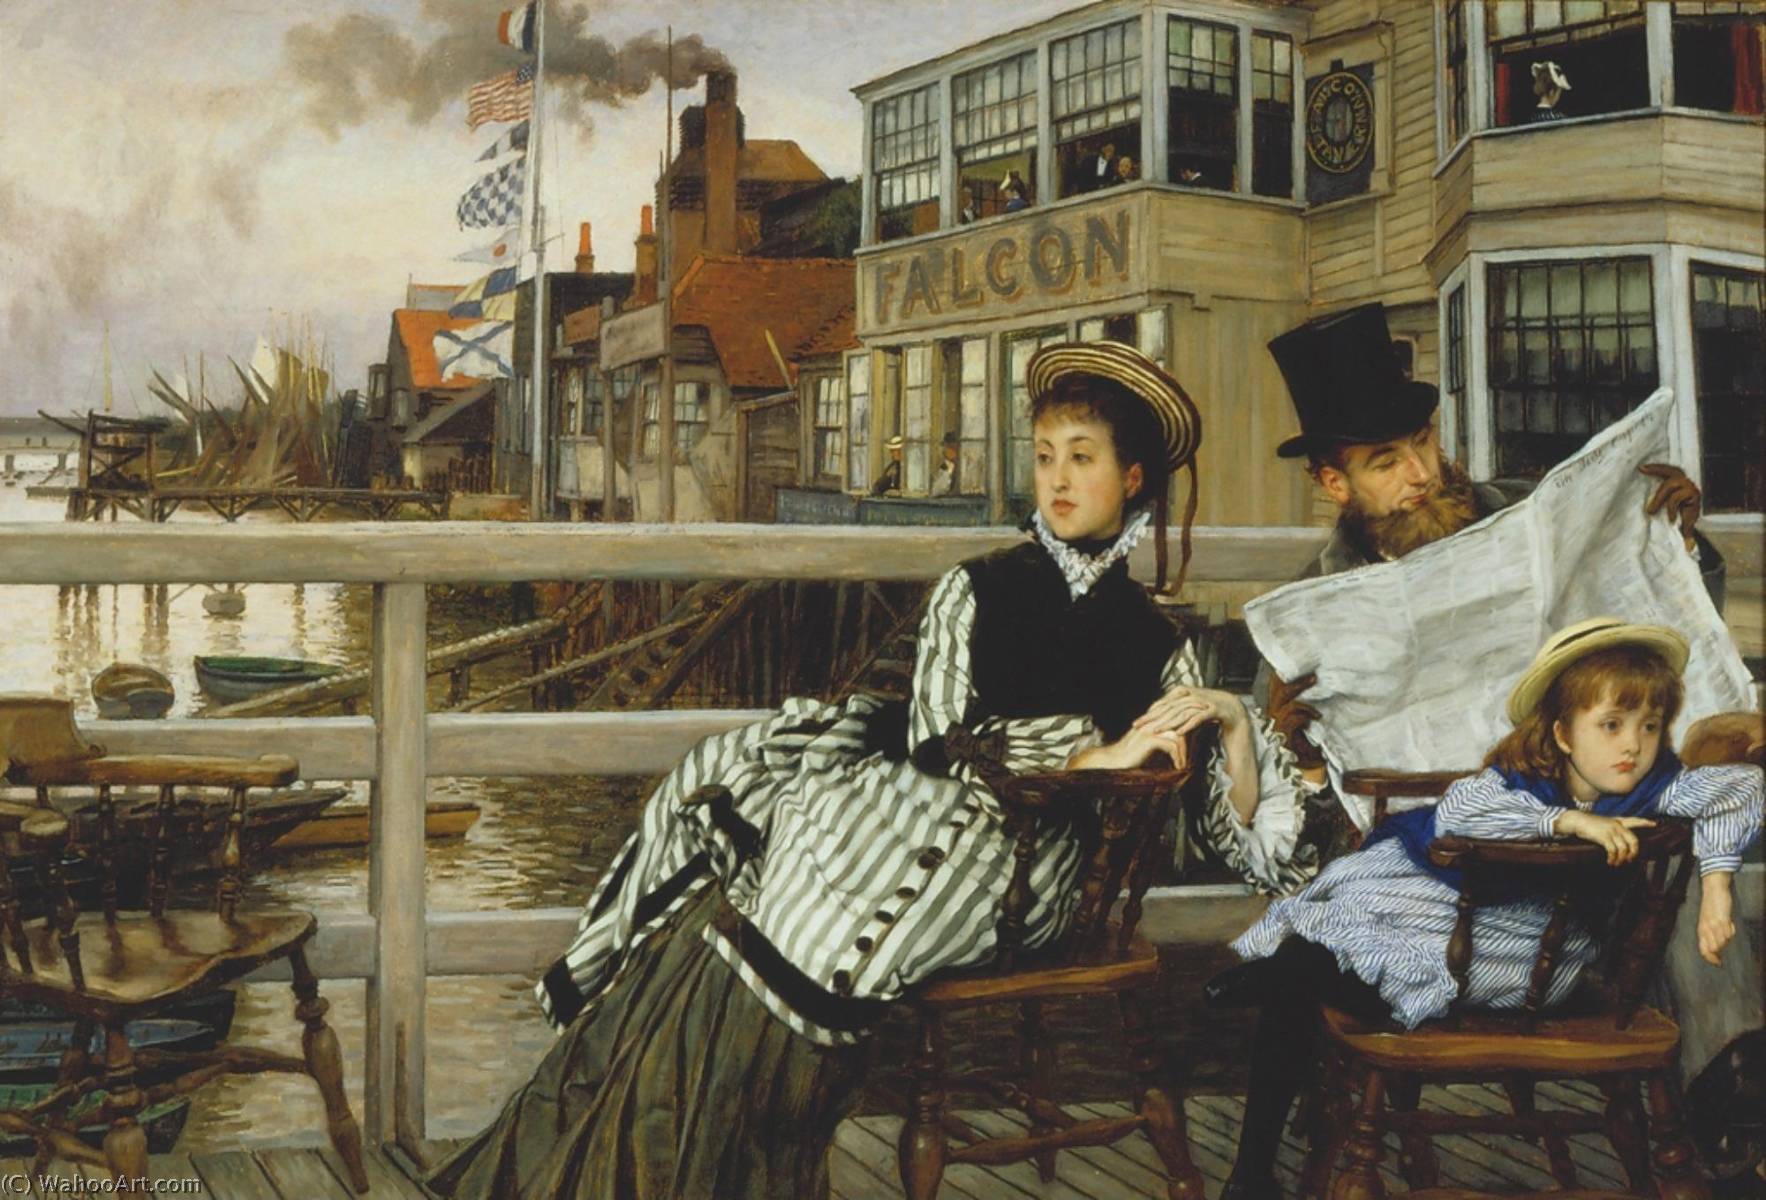 Wikioo.org - Bách khoa toàn thư về mỹ thuật - Vẽ tranh, Tác phẩm nghệ thuật James Jaques Joseph Tissot - Waiting for the Ferry at the Falcon Tavern